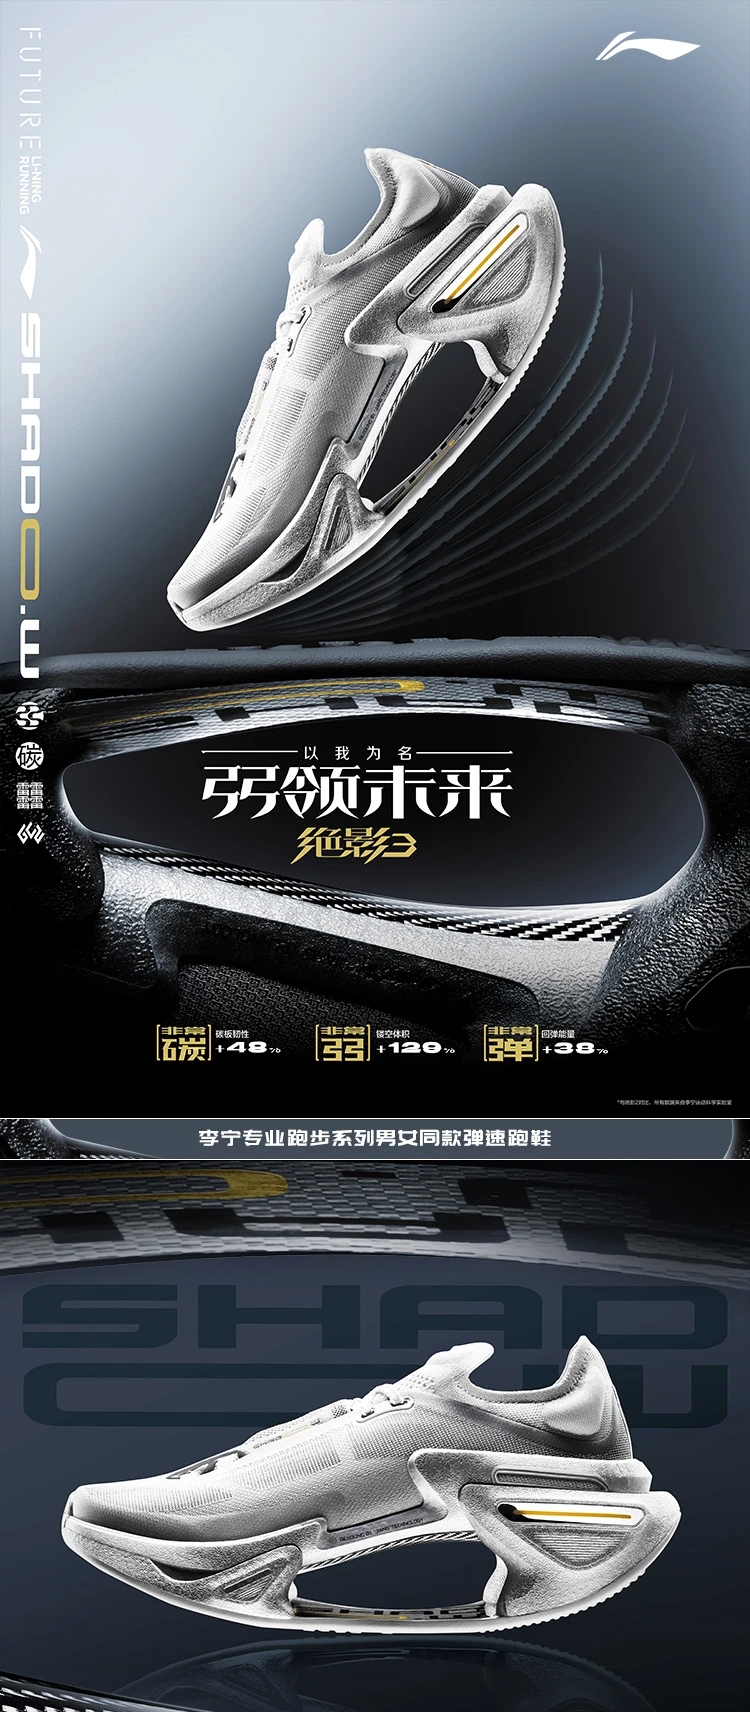 Li-Ning 24SS Jueying 3 Men's Fashion Running Shoes - Silver